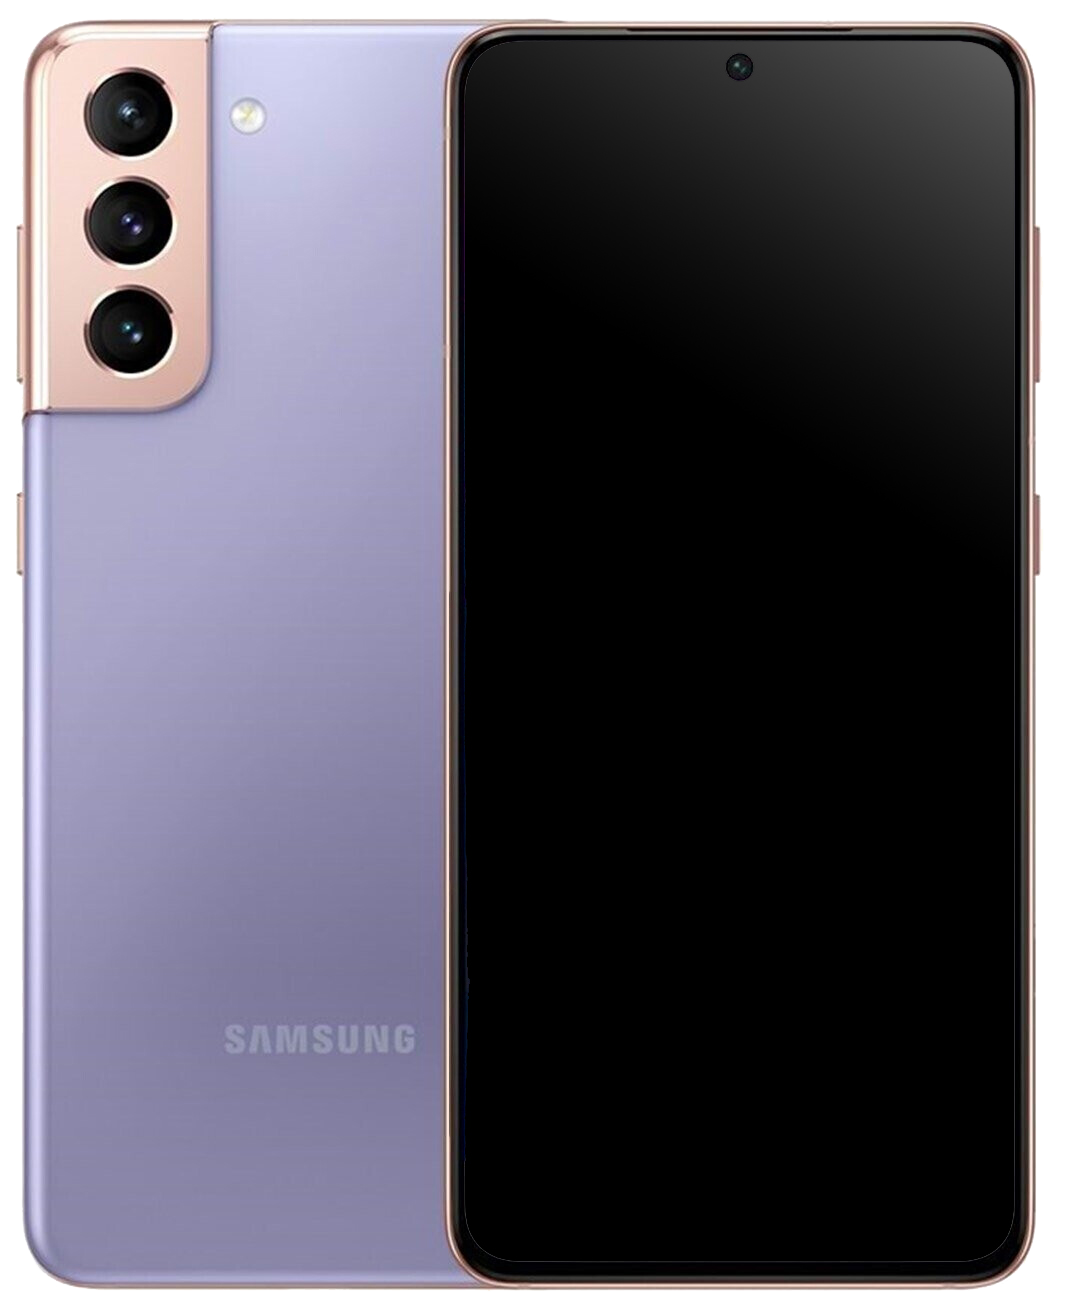 Samsung Galaxy S21 5G Dual-SIM lila - Ohne Vertrag